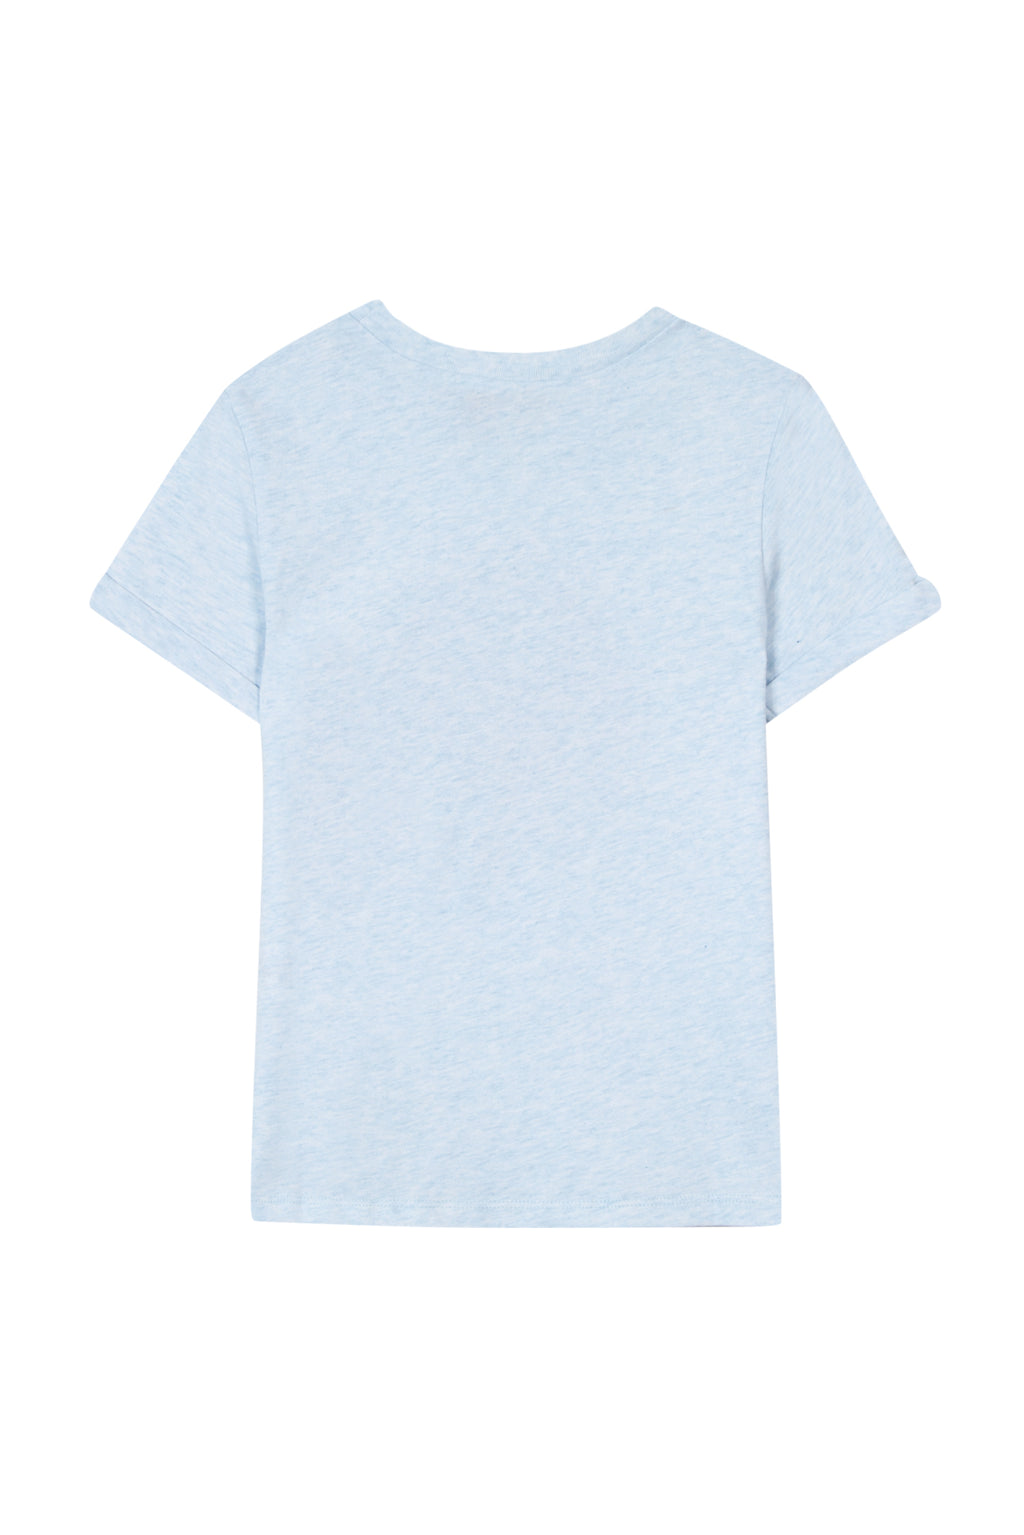 T-shirt - Jersey bleu ciel